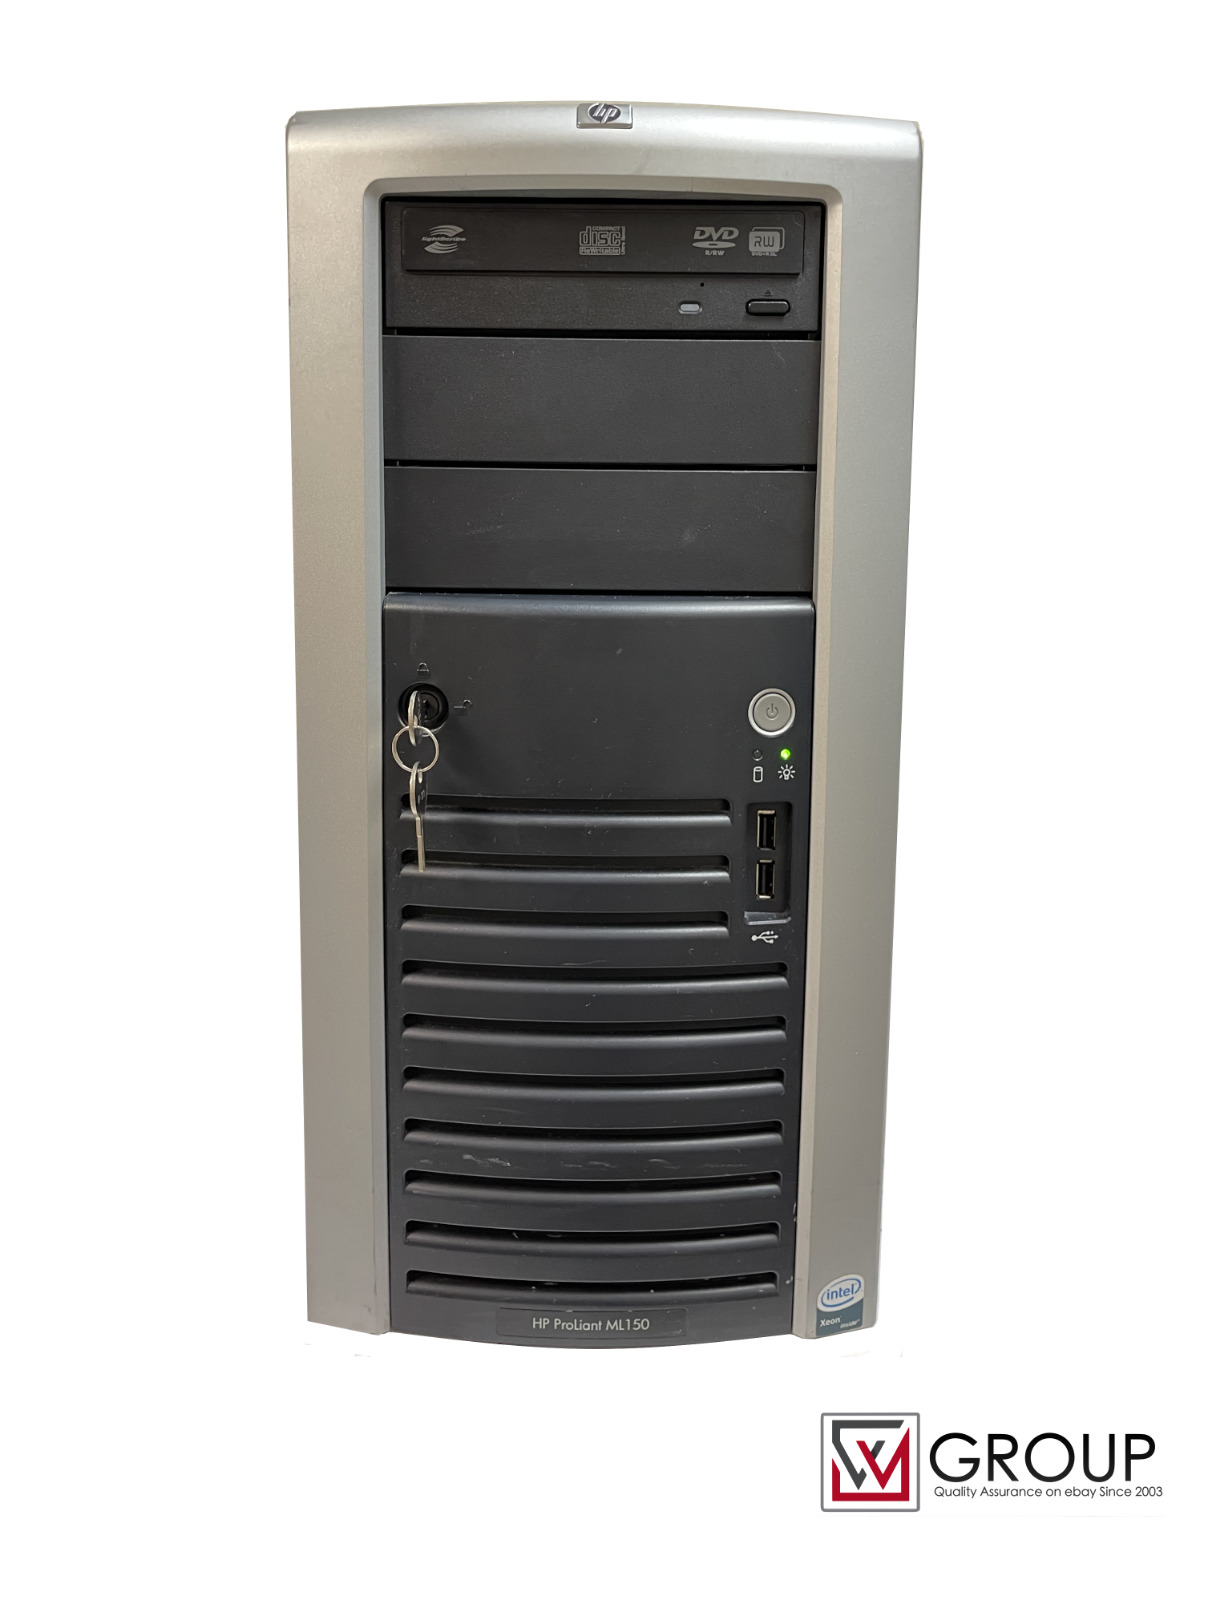 HP ProLiant ML150 Tower Server Gen 5 Intel 2.6 GHz 1X4 Ram 6 Bays 4 X 72gb HDD